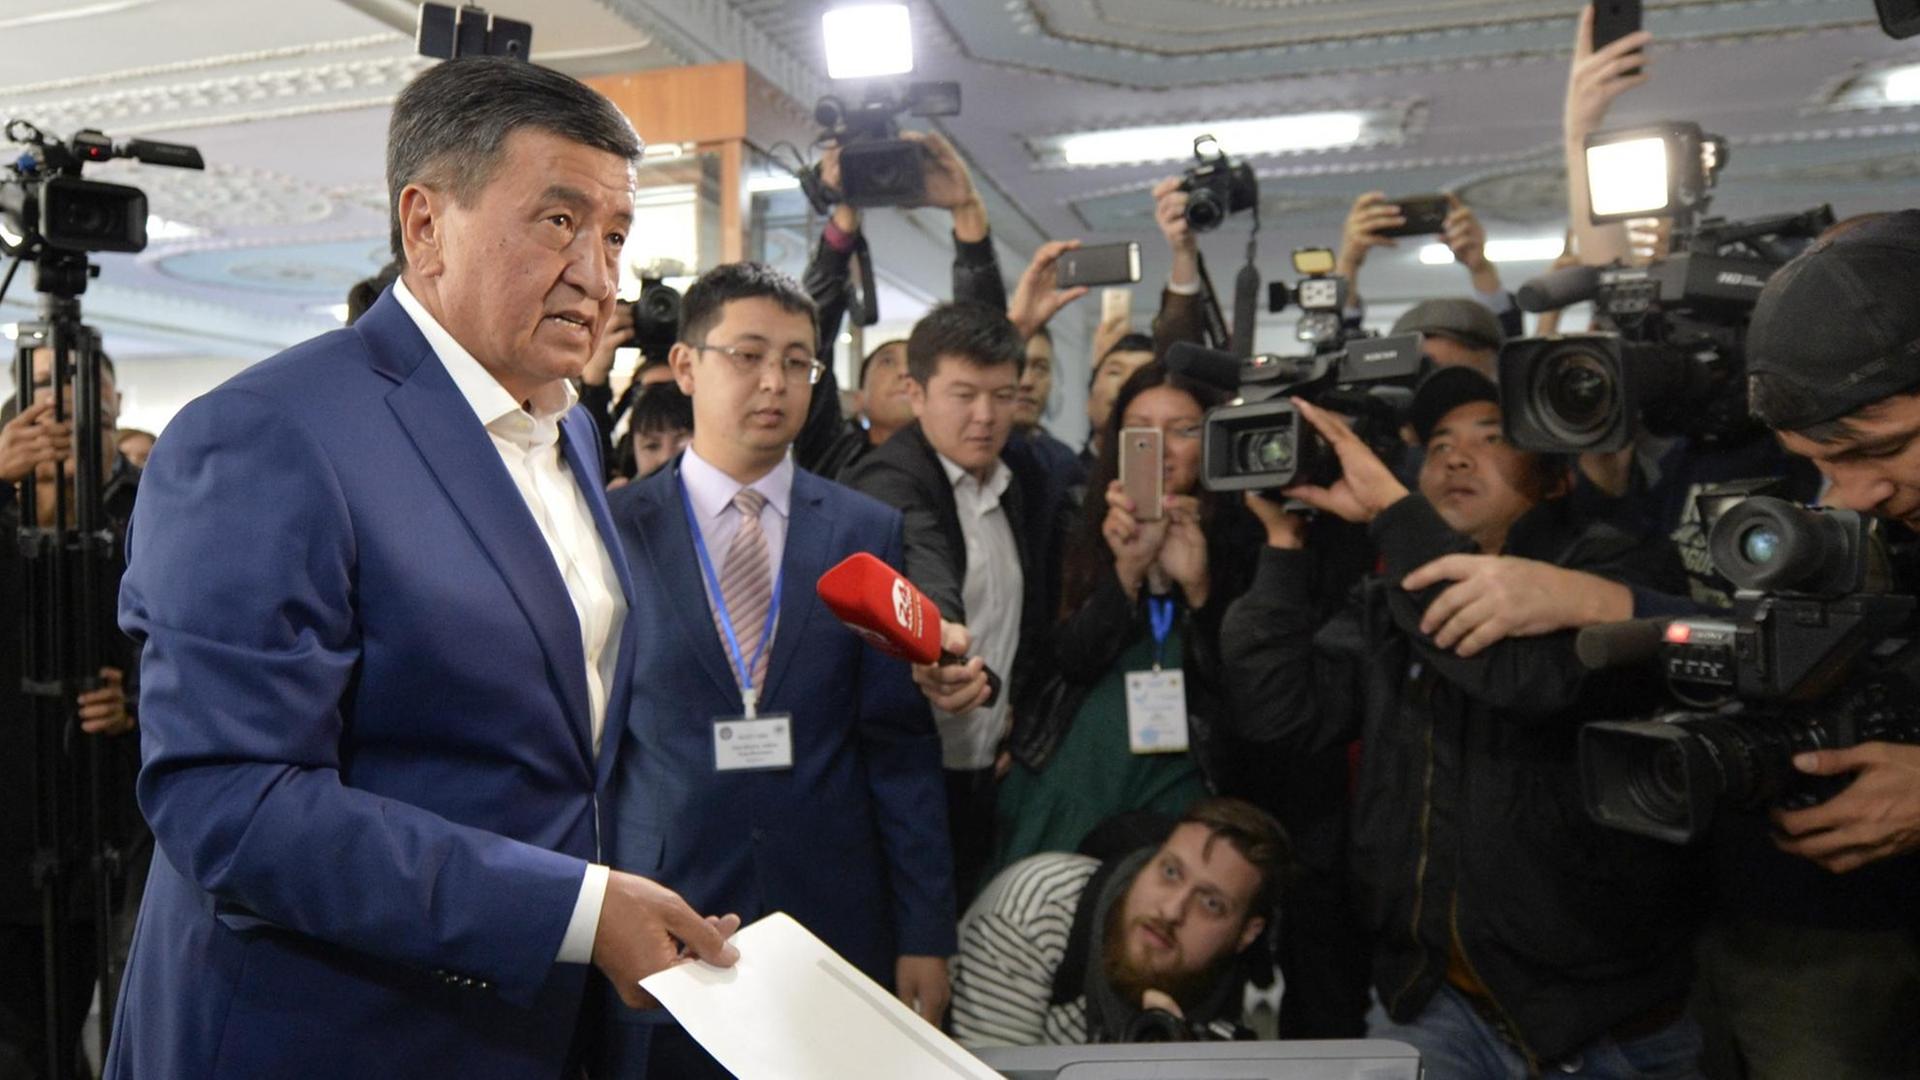 Der kirgisische Präsidentschaftskandidat Soroonbaj Scheenbekow (l) gibt am 15.10.2017 in einem Wahllokal in Bischkek (Kirgistan) seinen Stimmzettel ab.